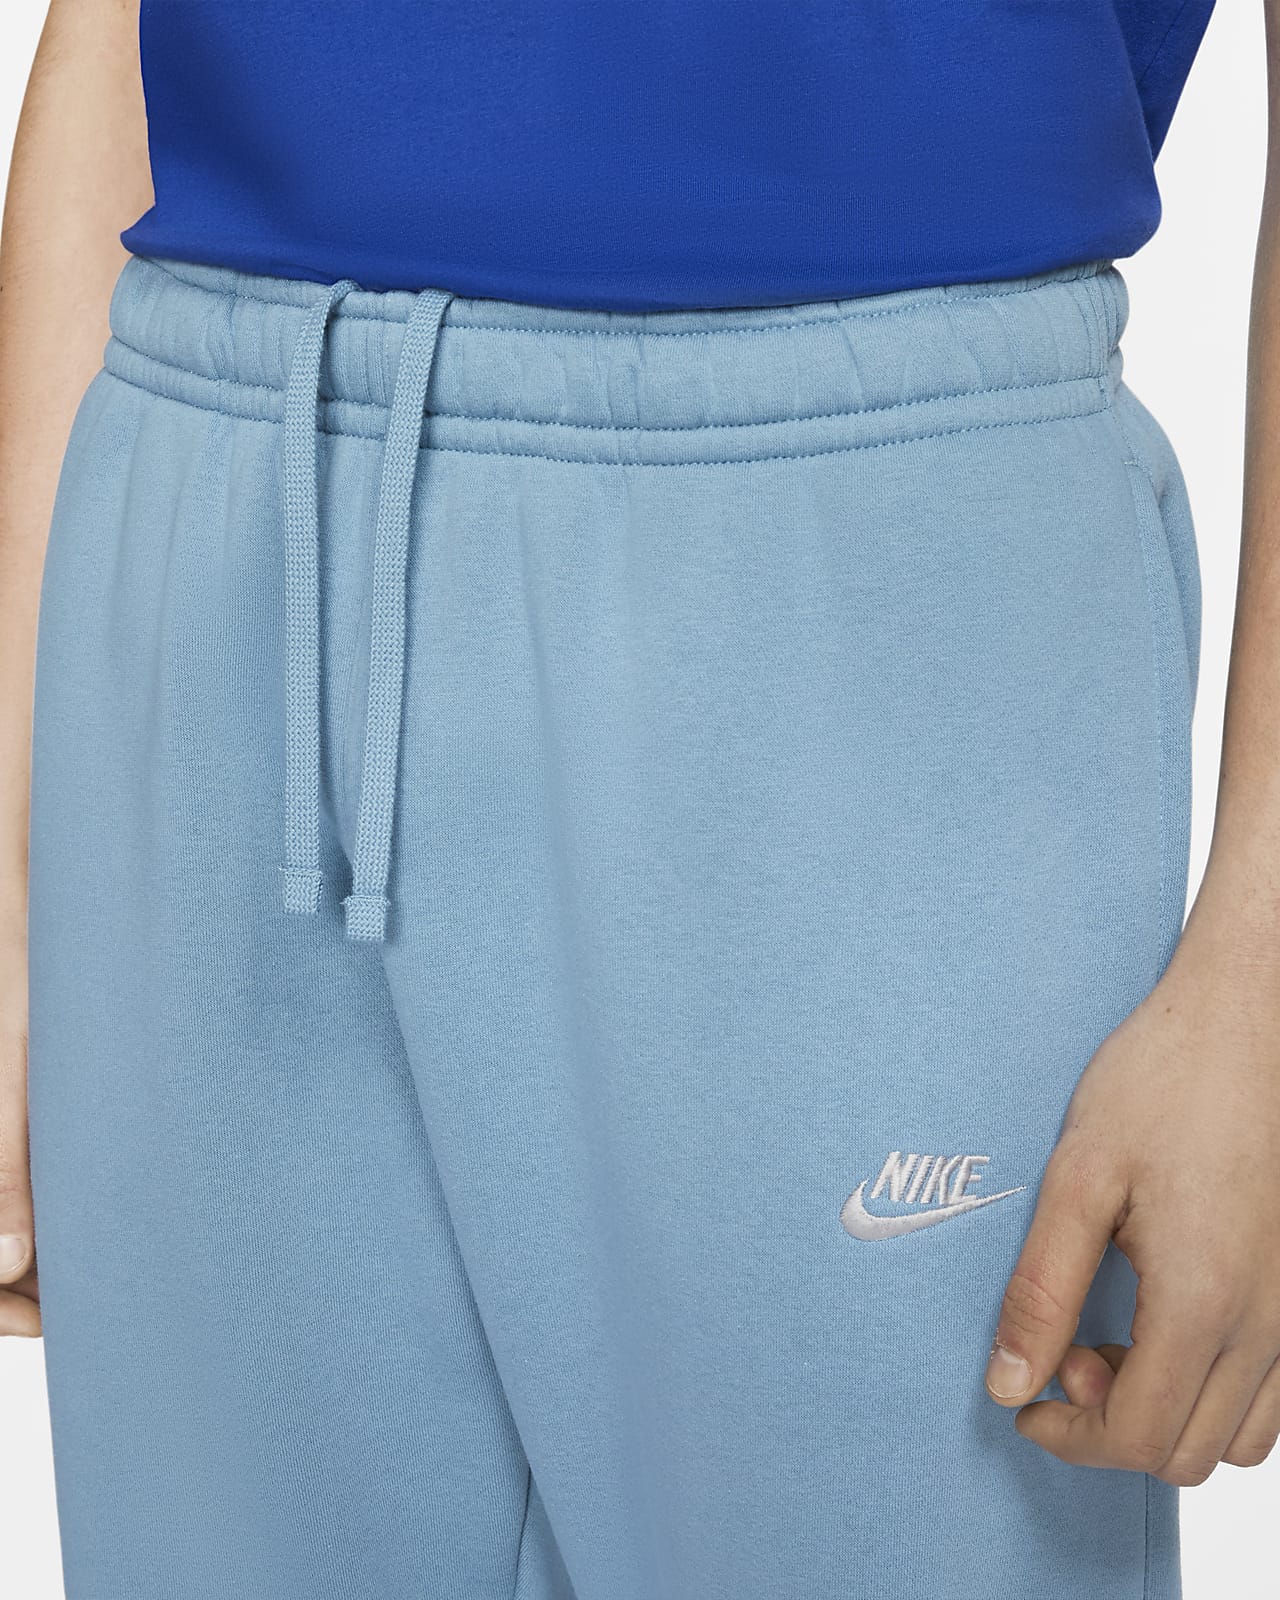 Buy > nike women's sportswear club fleece shorts > in stock